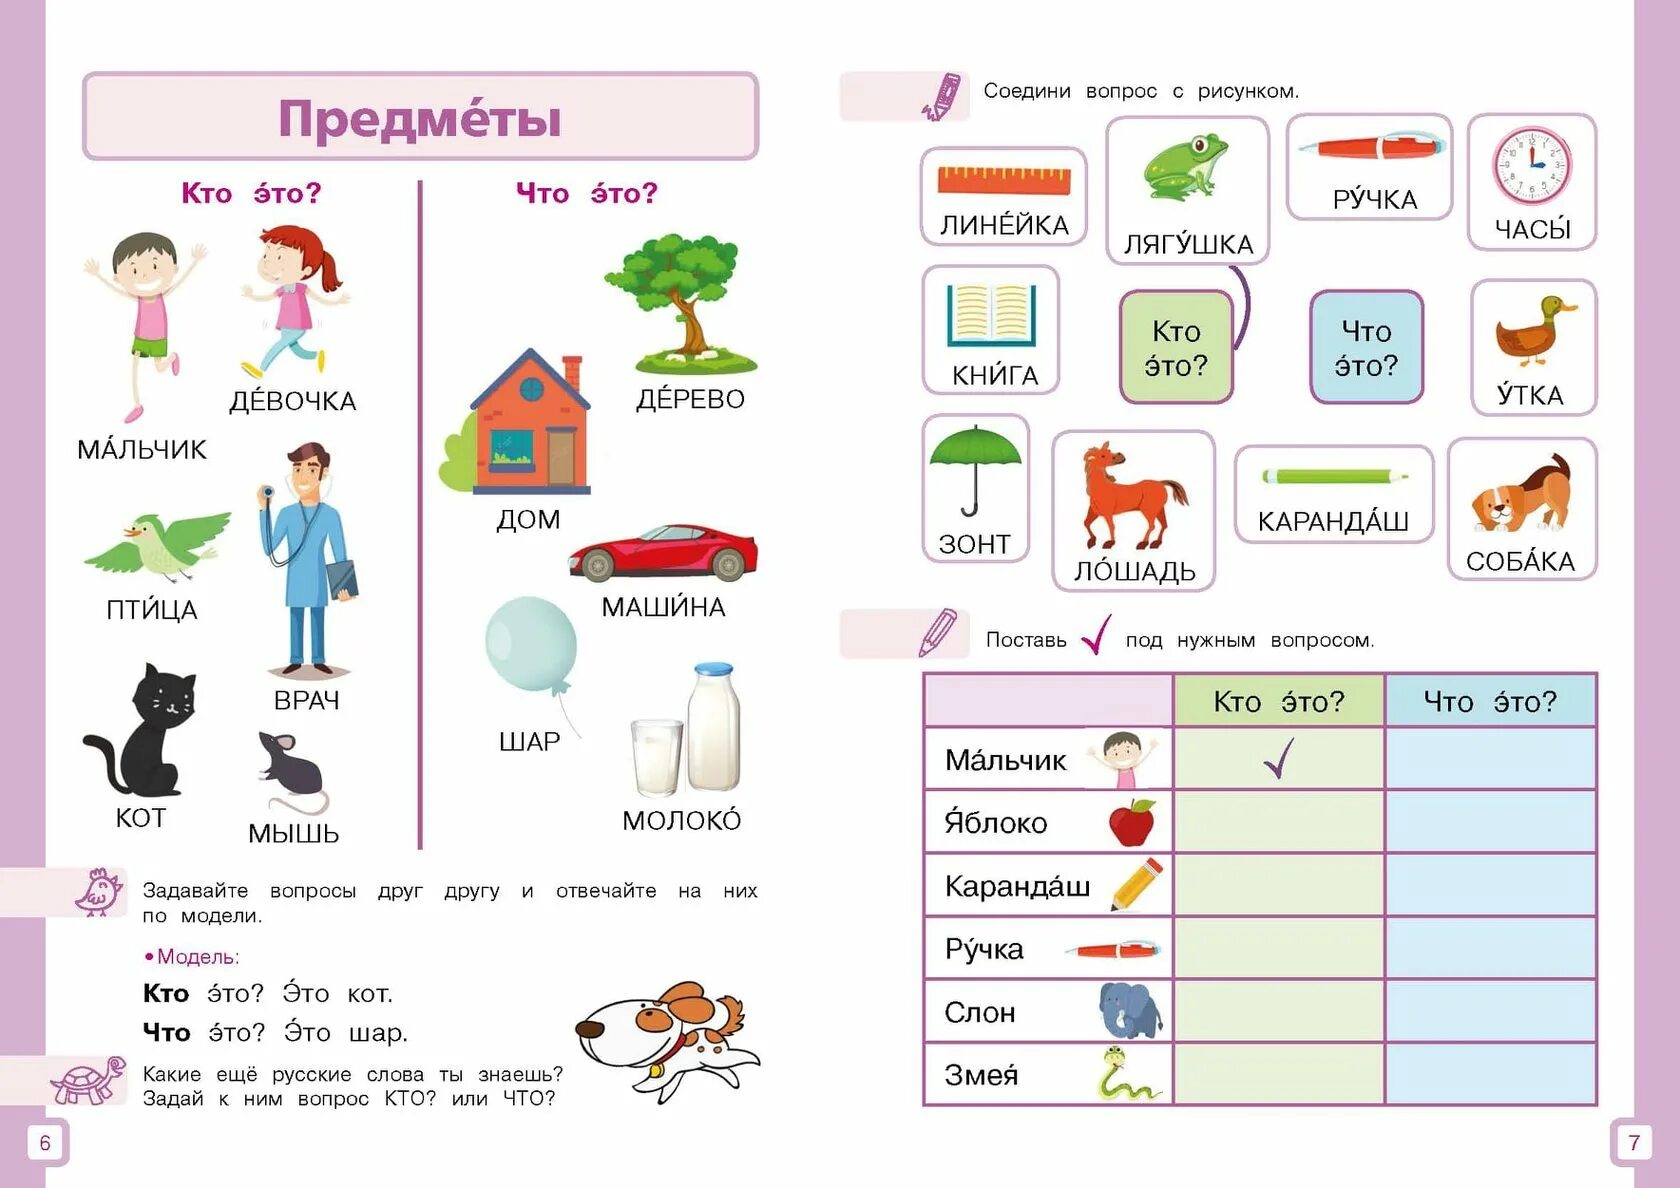 Задания для детей билингвов. Задания для детей билингвов по русскому языку. Задания по РКИ для детей. РКИ для детей билингвов.